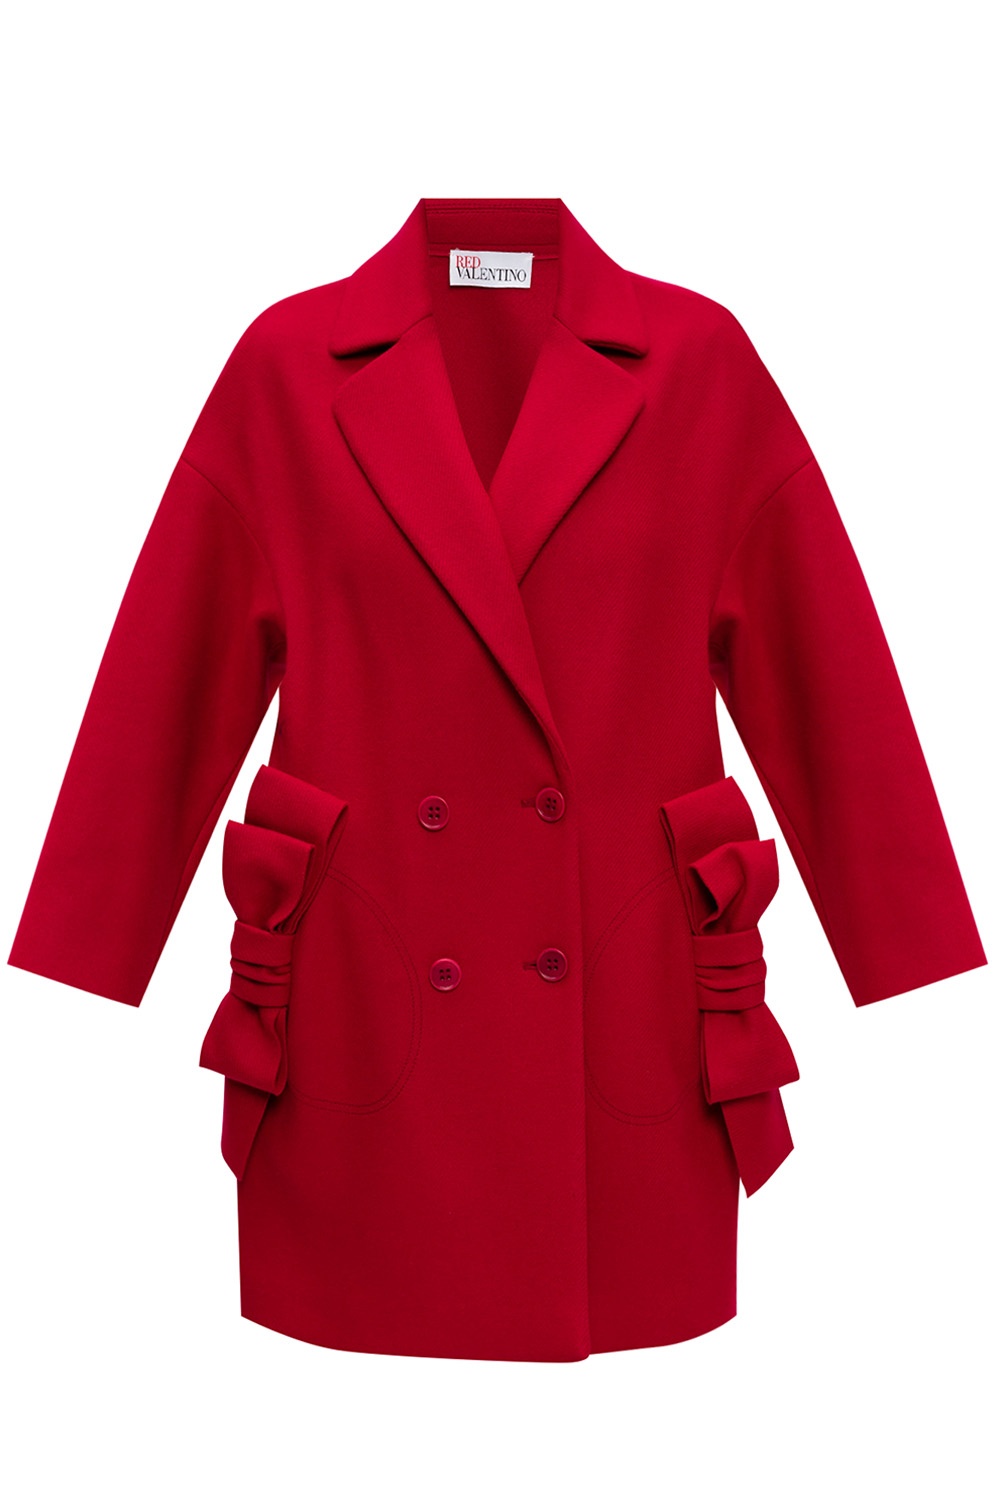 Wool coat Red Valentino - Vitkac